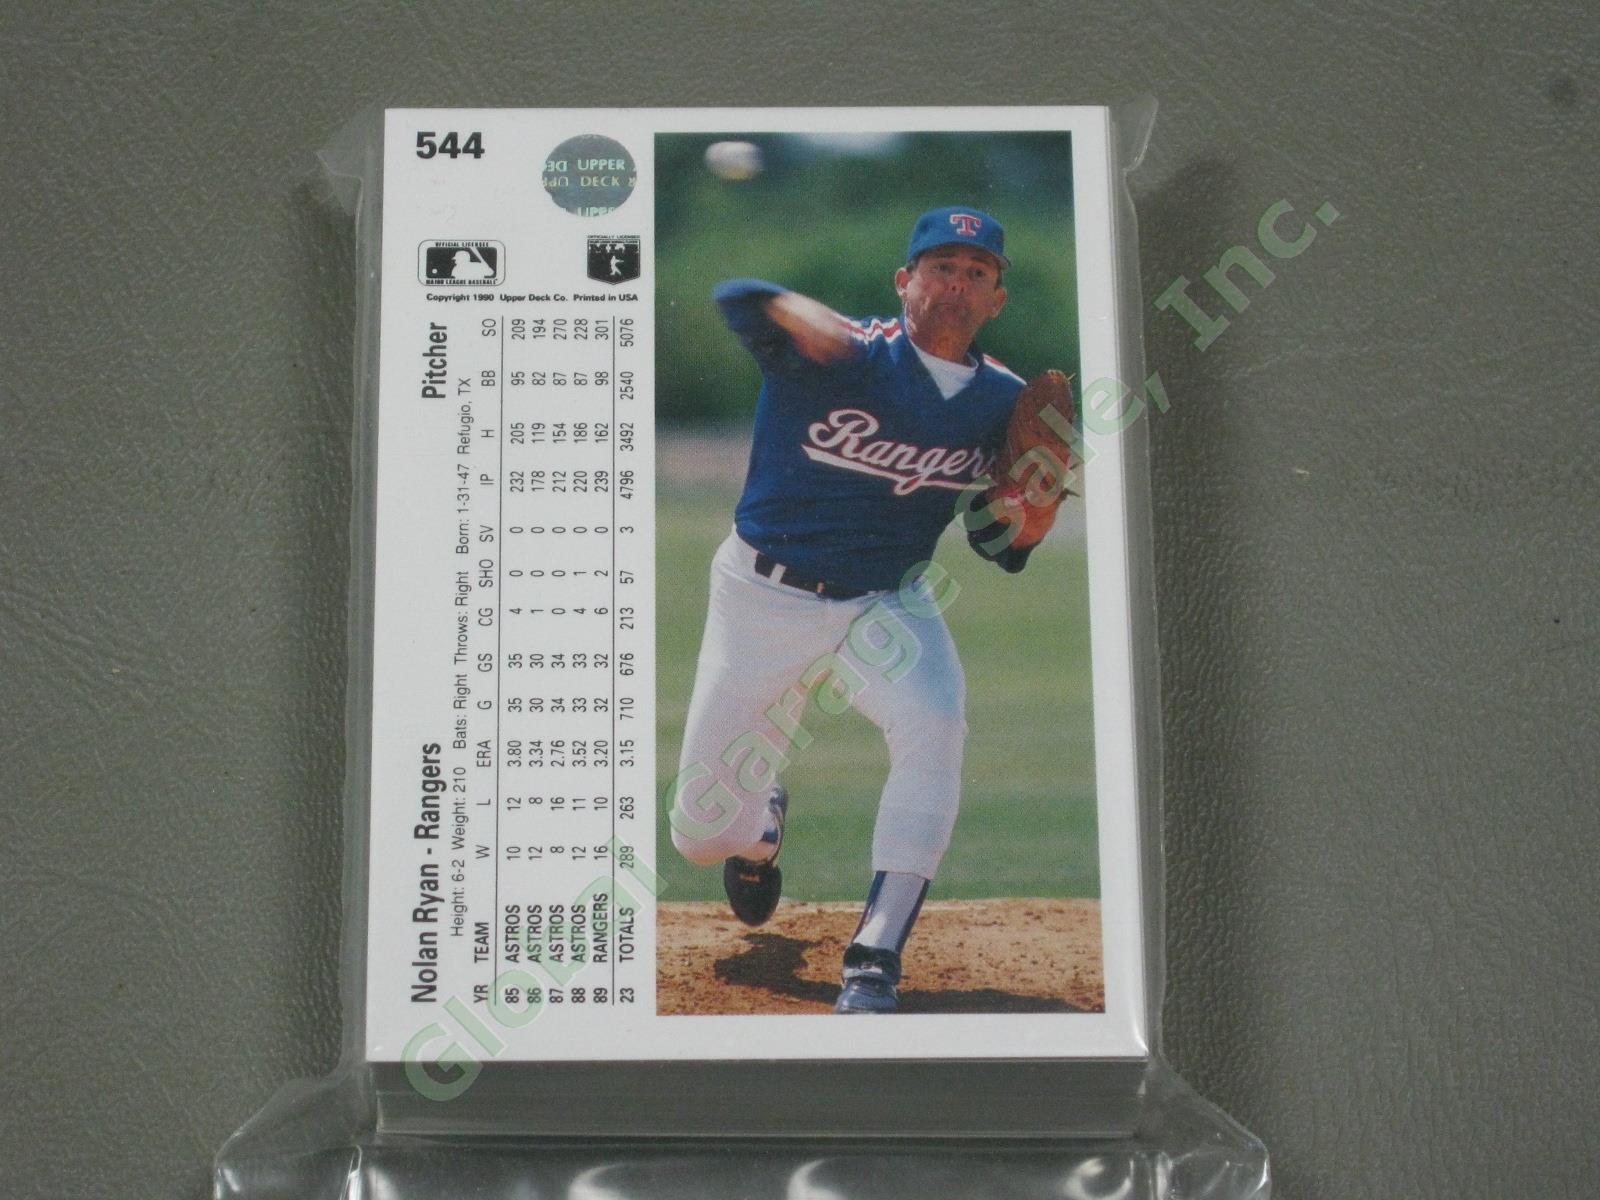 HUGE 3650+/- Vtg Nolan Ryan Baseball Card Lot 1984-1991 Topps Upper Deck #1 ++NR 11